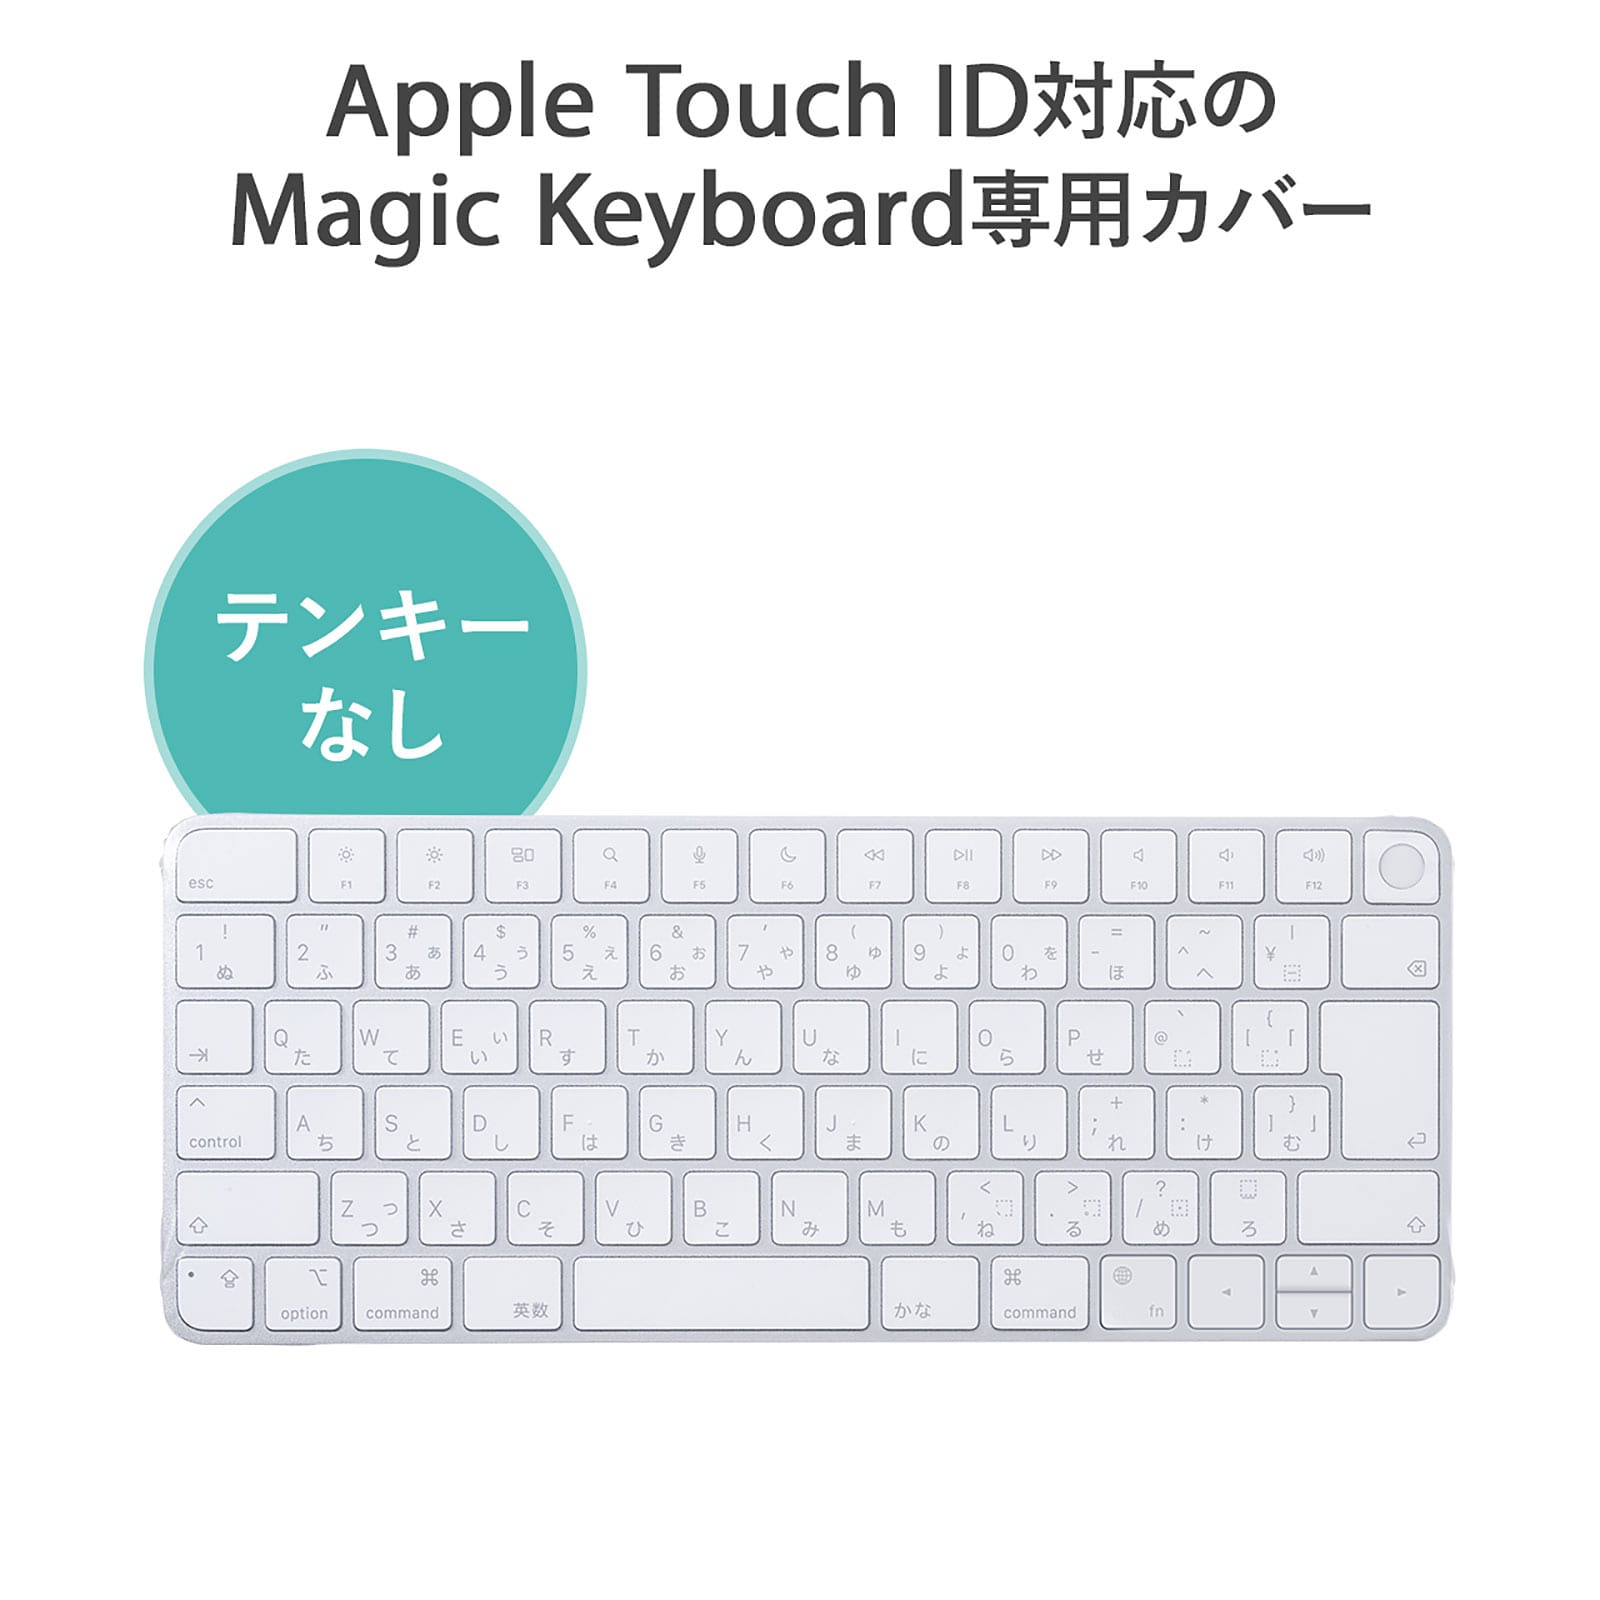 サンワサプライ、Touch IDに対応したMagic Keyboard用カバーを発売